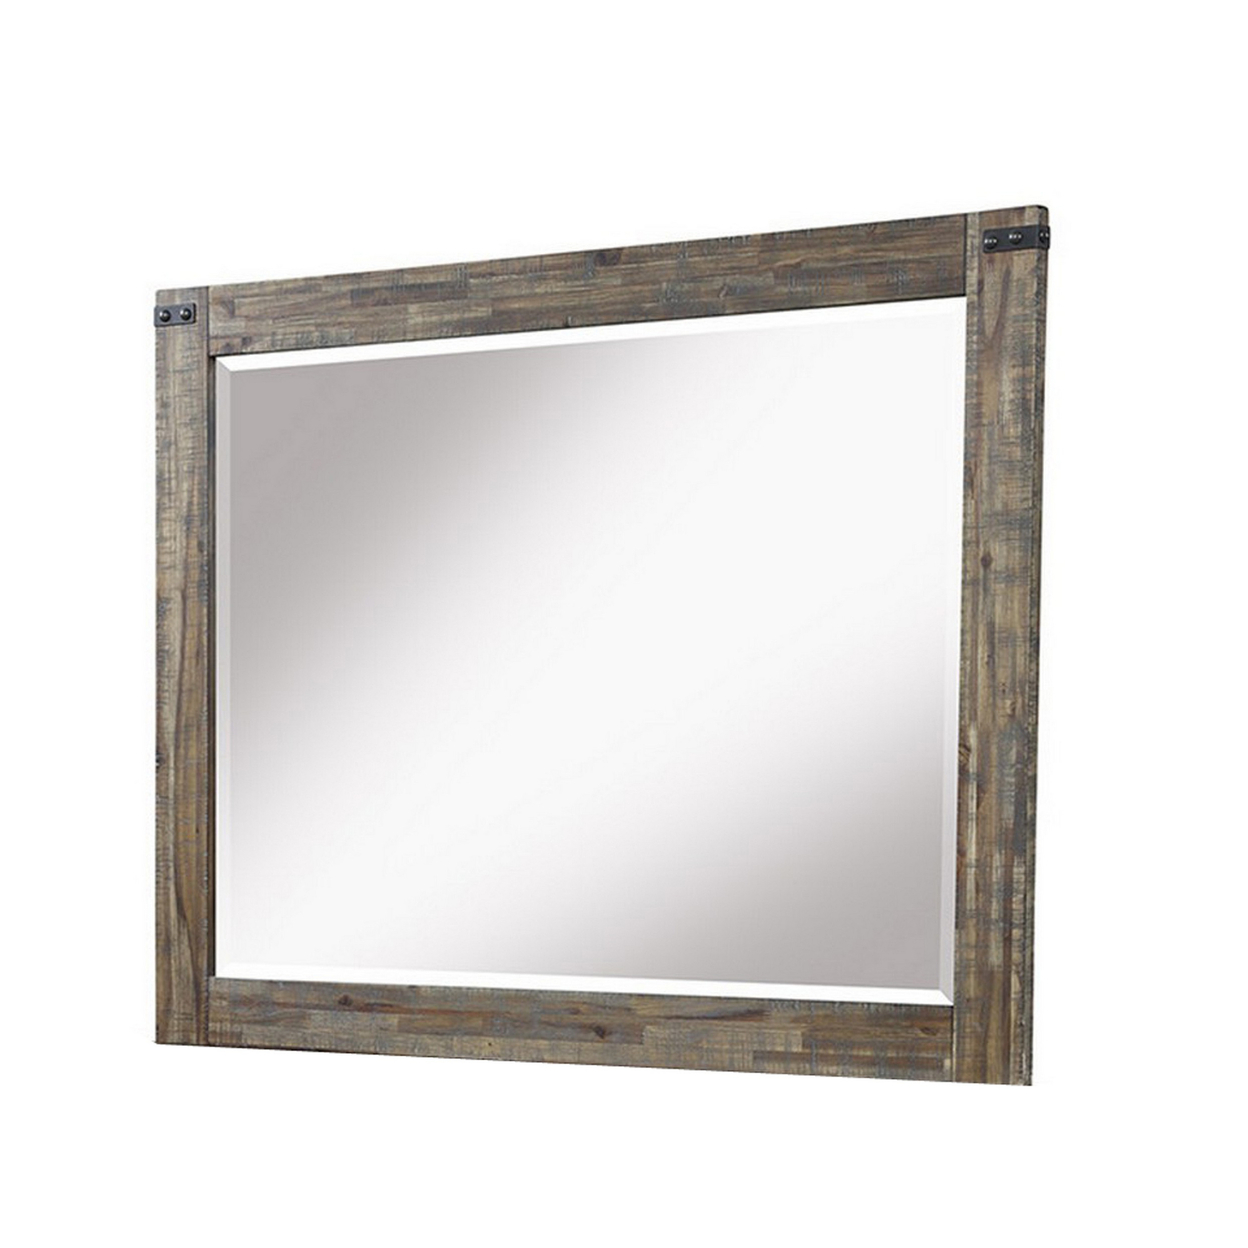 Galle 38 X 50 Dresser Mirror, Rectangular, Metal Accents, Walnut Brown Wood -Saltoro Sherpi